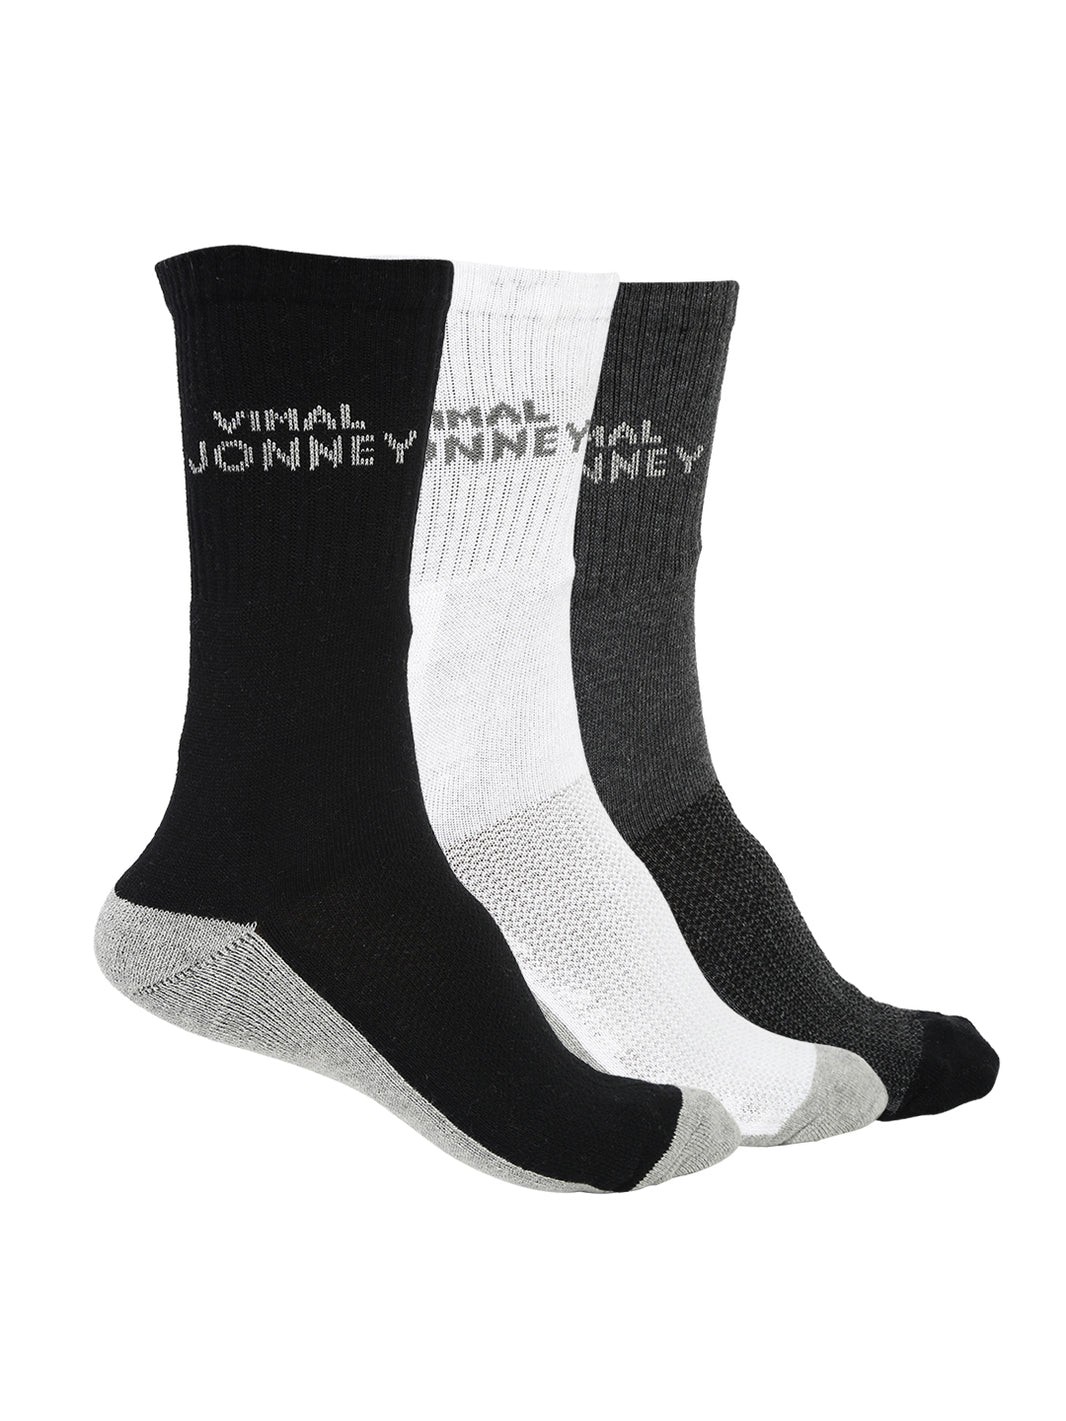 Vimal Jonney Men's Cotton Solid Full Socks, Free Size, Pack of 3 (Multicoloured)